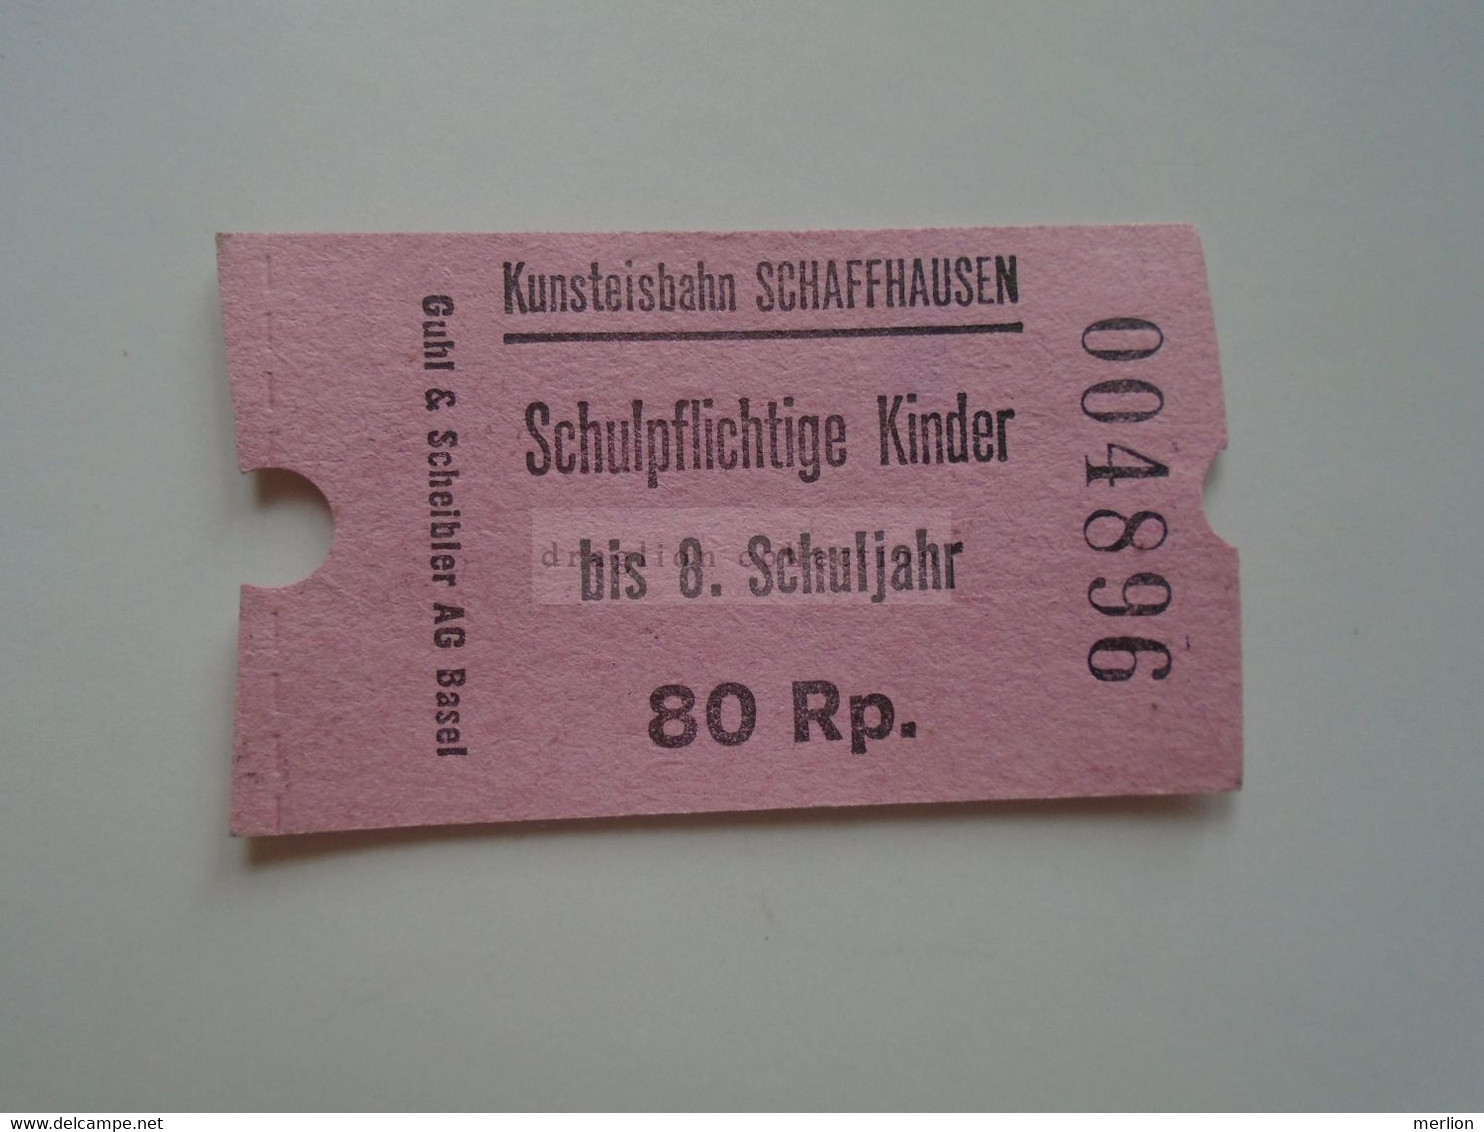 DT013 Kunsteisbahn Schaffhausen -Artificial Ice Rink Schulpflichtige Kinder Bis 8 Schuljahr  80 Rp.  1960-80's Skating - Europe